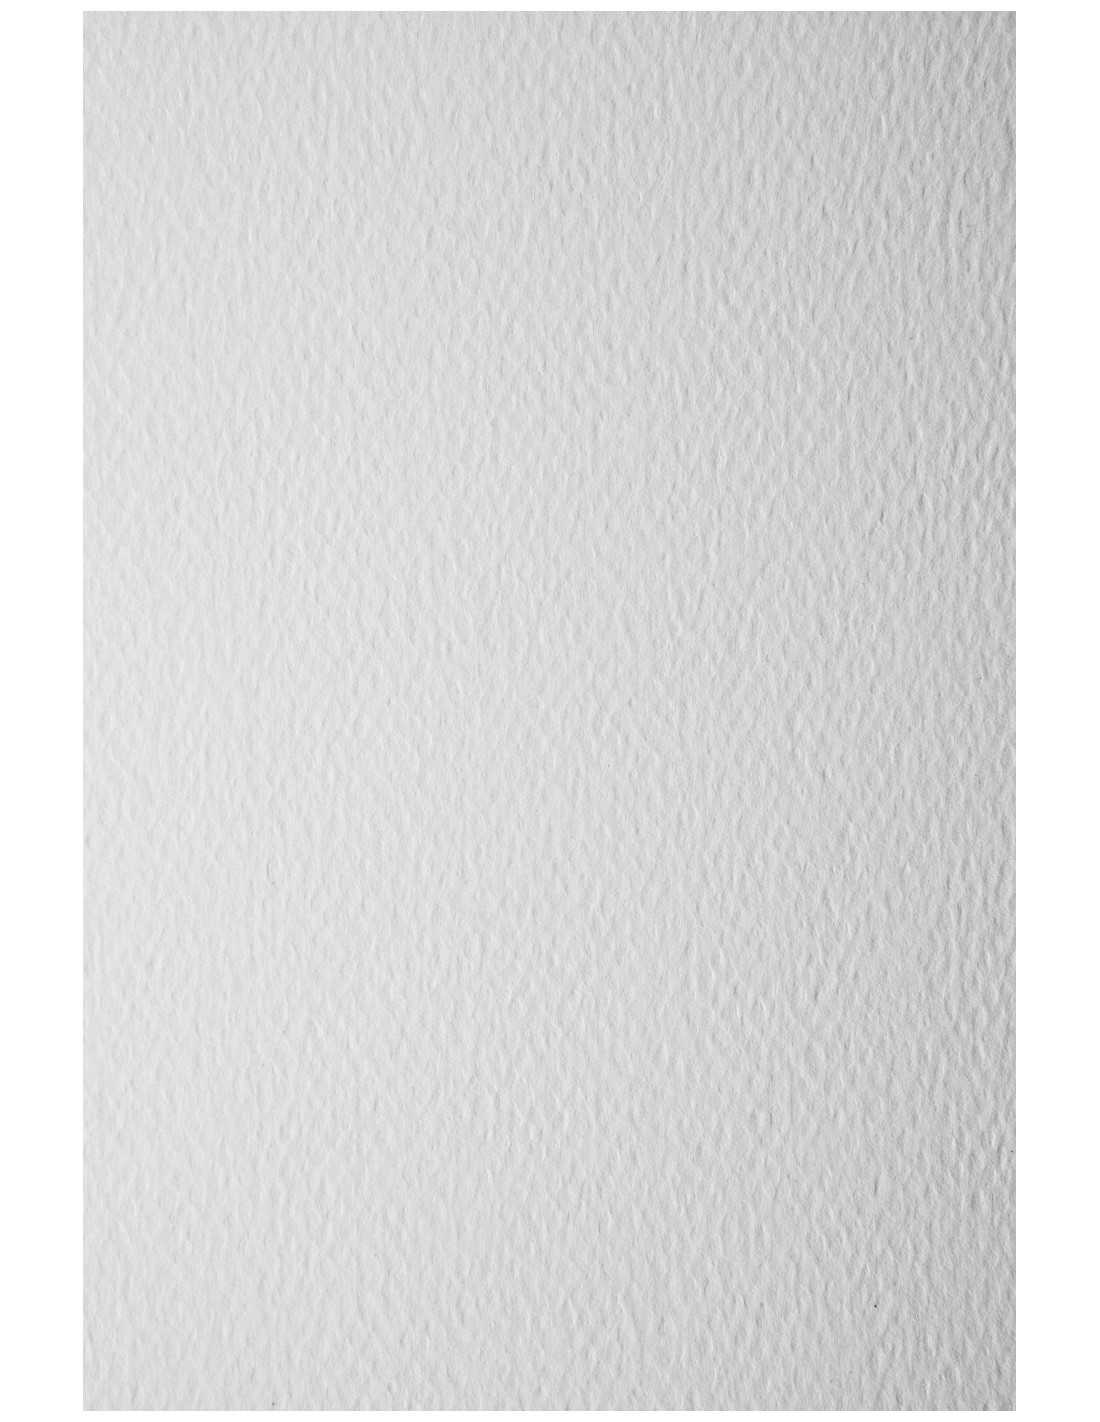 Fehér olasz művészpapír Prisma - 300 g/m2 - A4